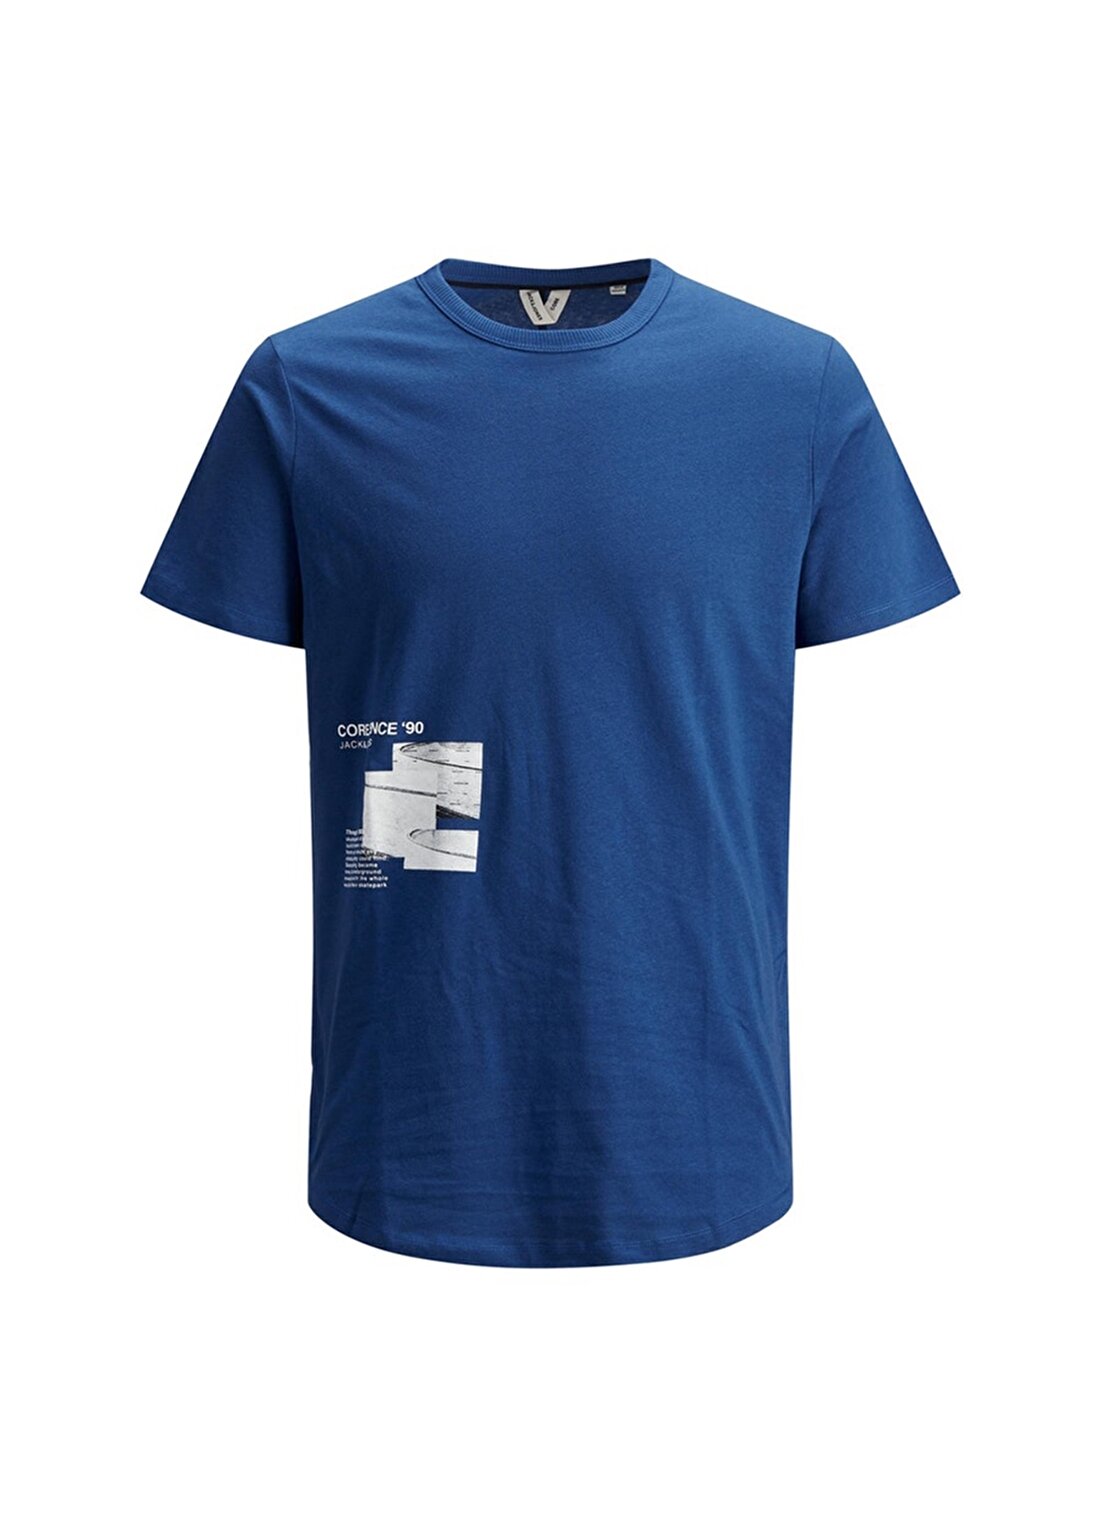 Jack & Jones Erkek Koyu Mavi Bisiklet Yaka T-Shirt